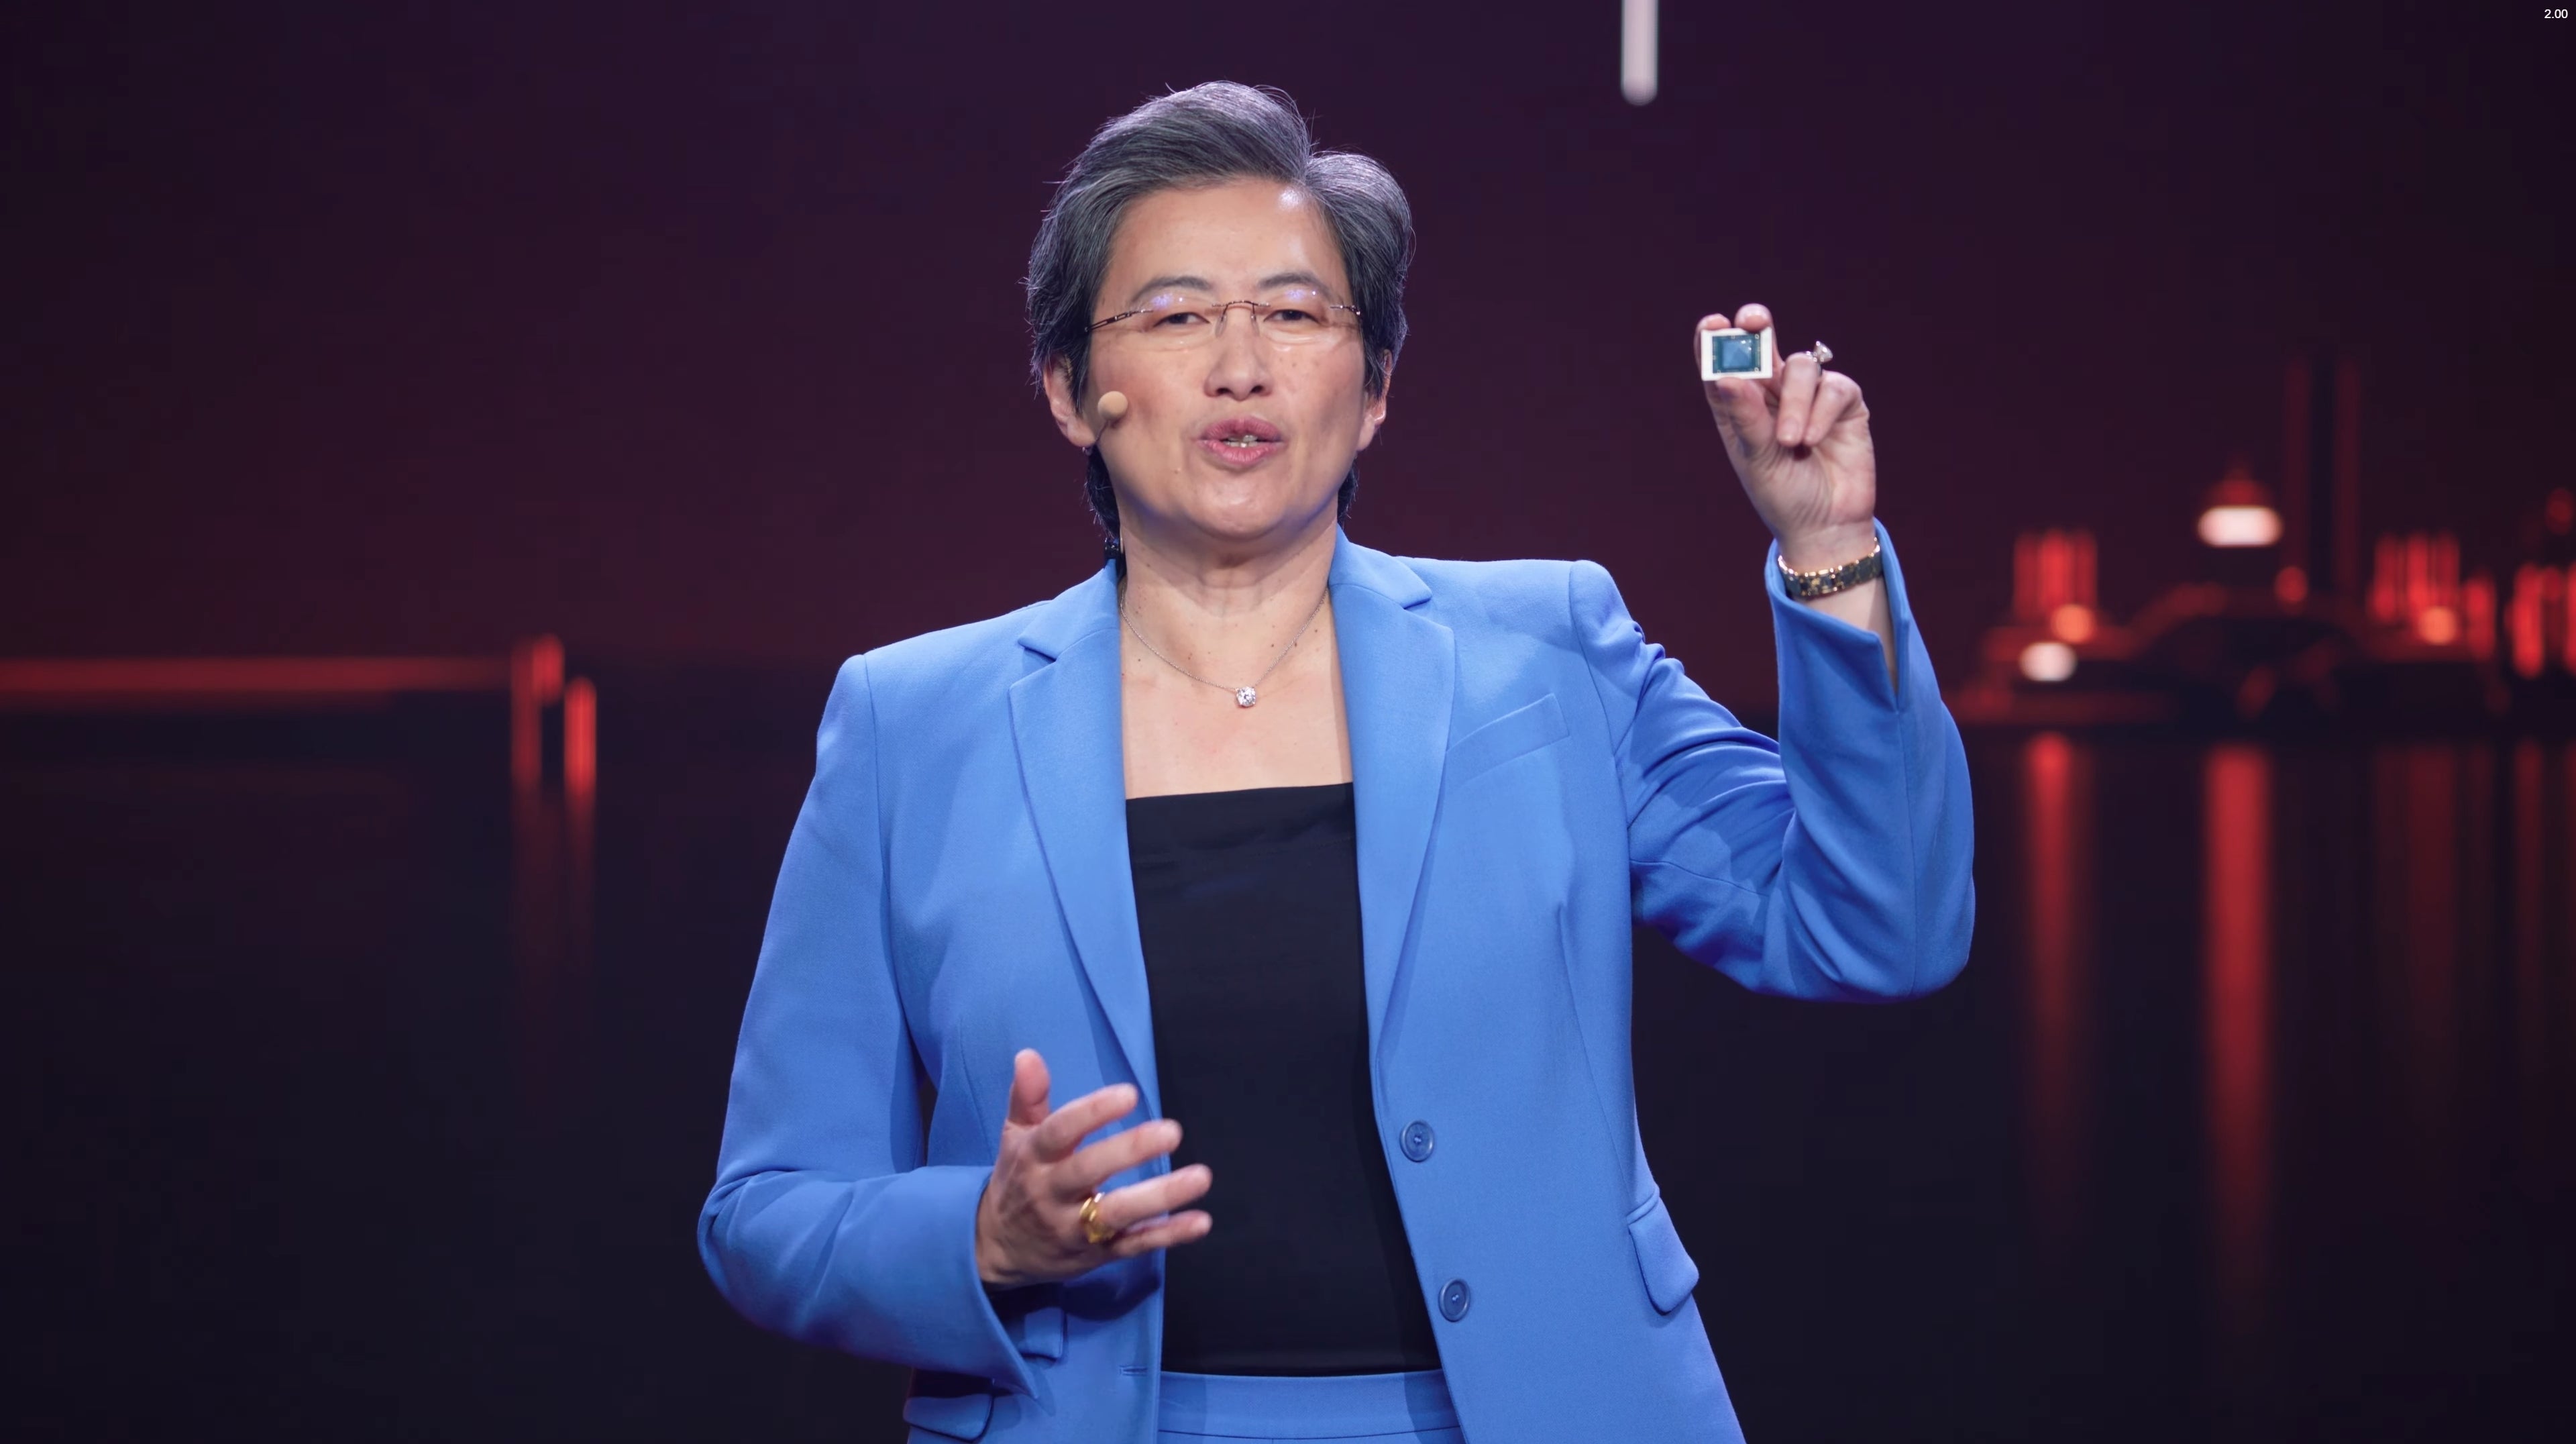 Bilder zu AMD auf der CES 2021: Ryzen-5000-Prozessoren für Laptops angekündigt